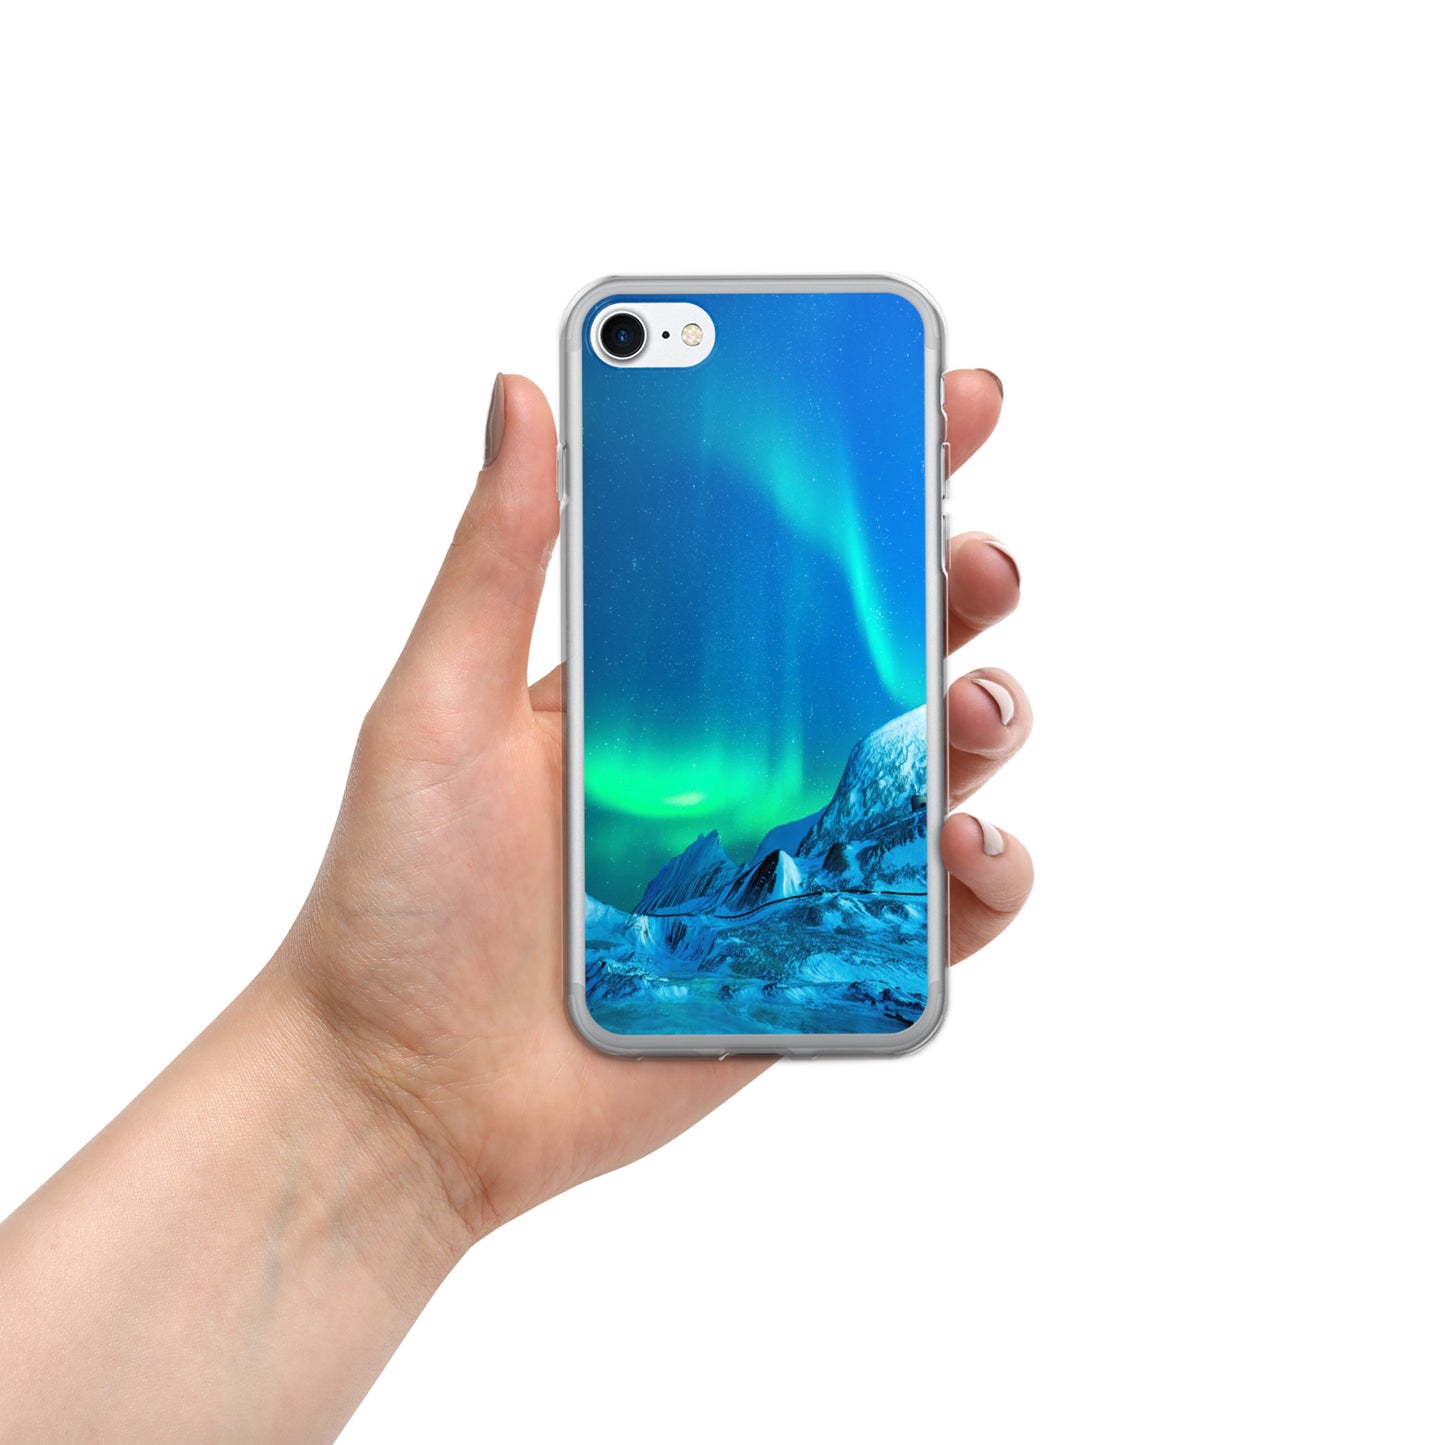 Unique Aurora Borealis iPhone Cover Case - Northern Light Phone Cover Case - Clear Case for iPhone - Perfect Aurora Lovers Gift 3